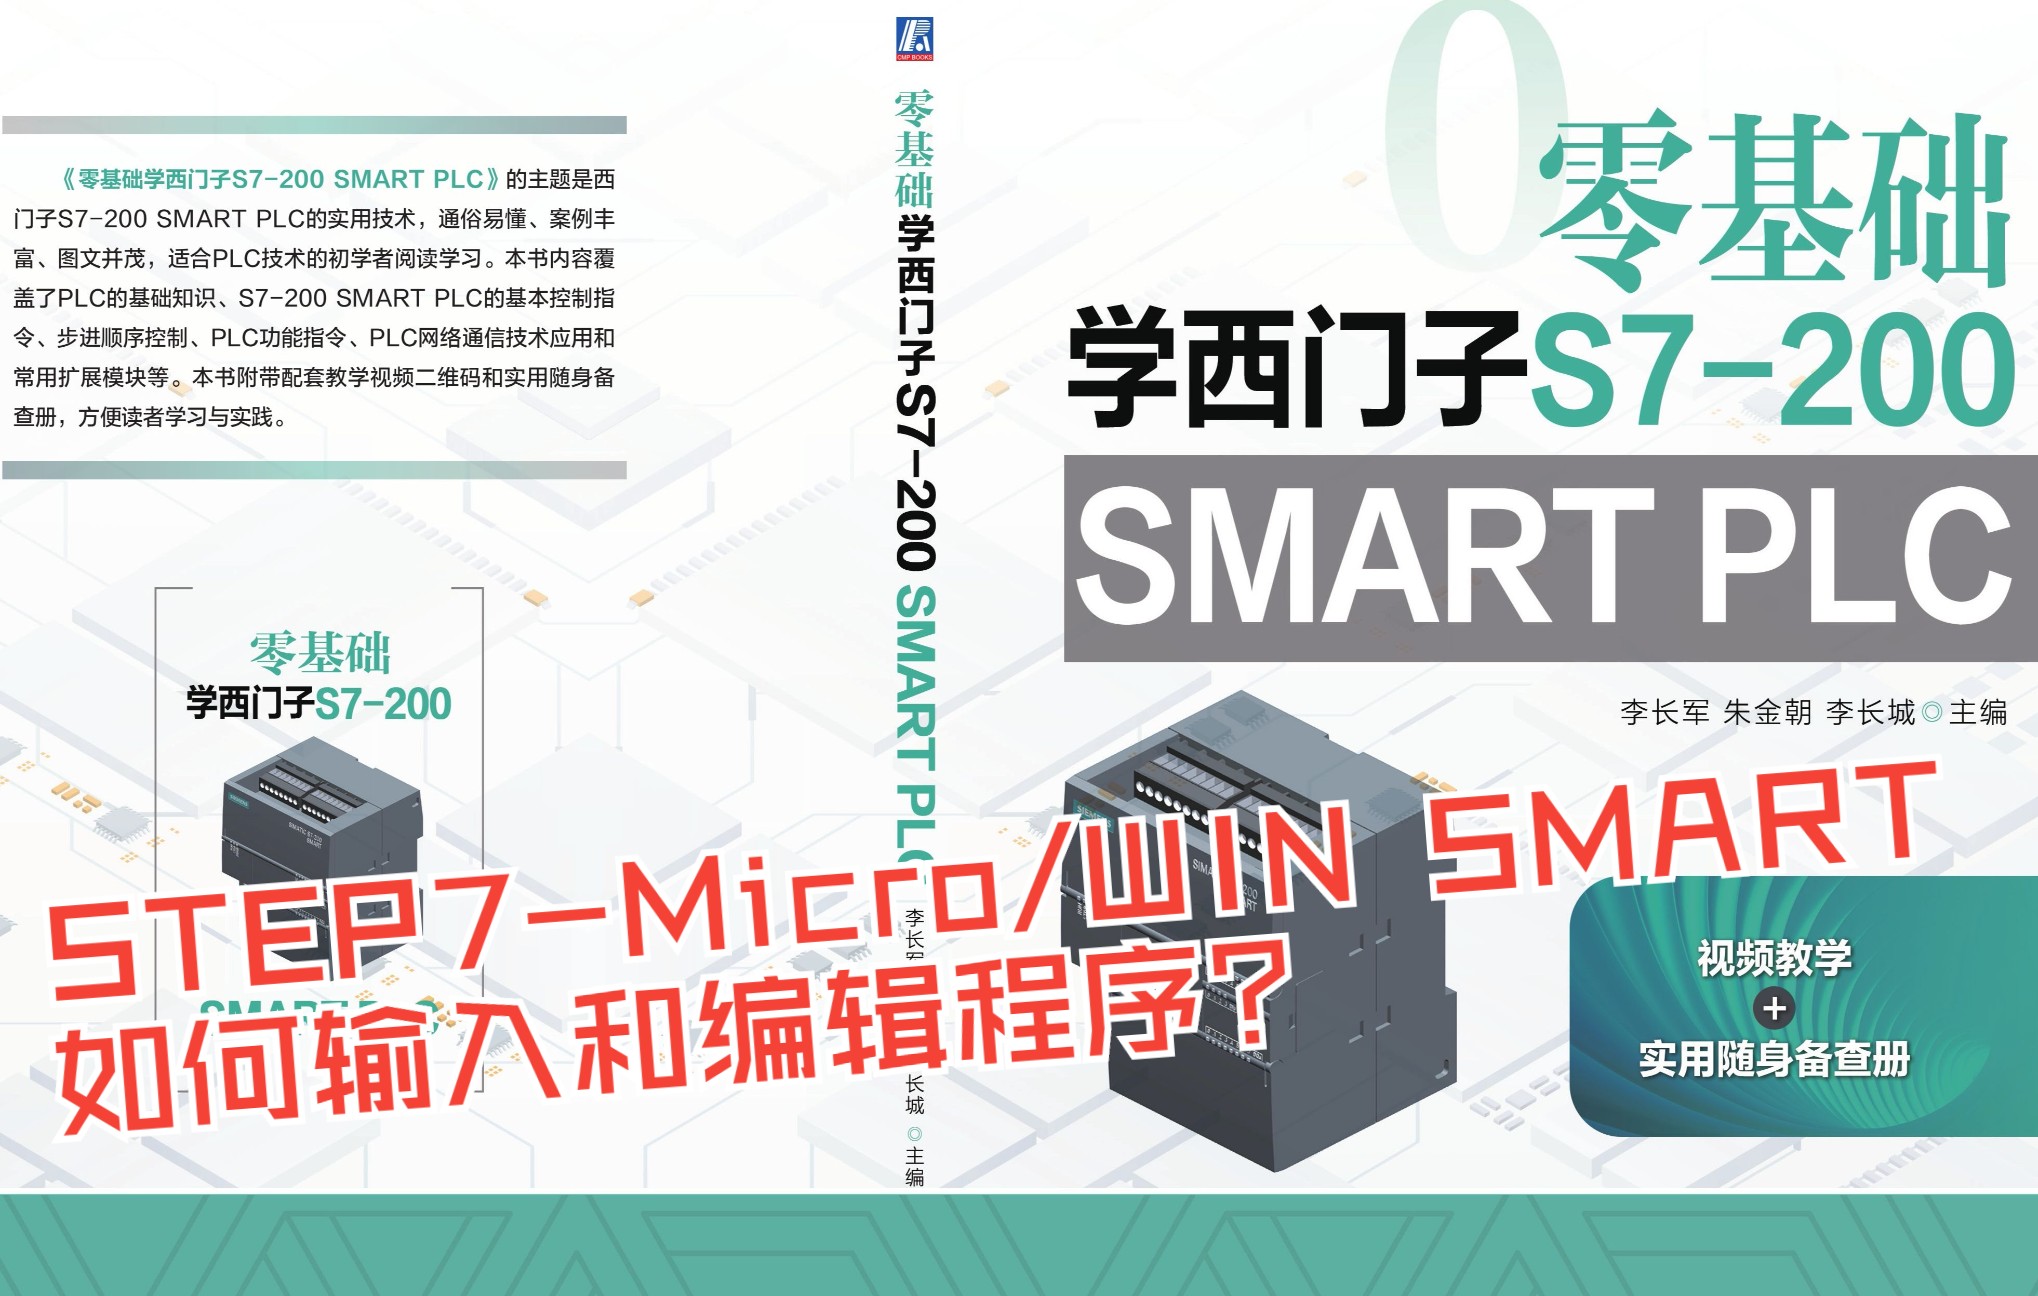 西门子PLC：在STEP7-Micro/WIN SMART中如何输入和编辑程序？